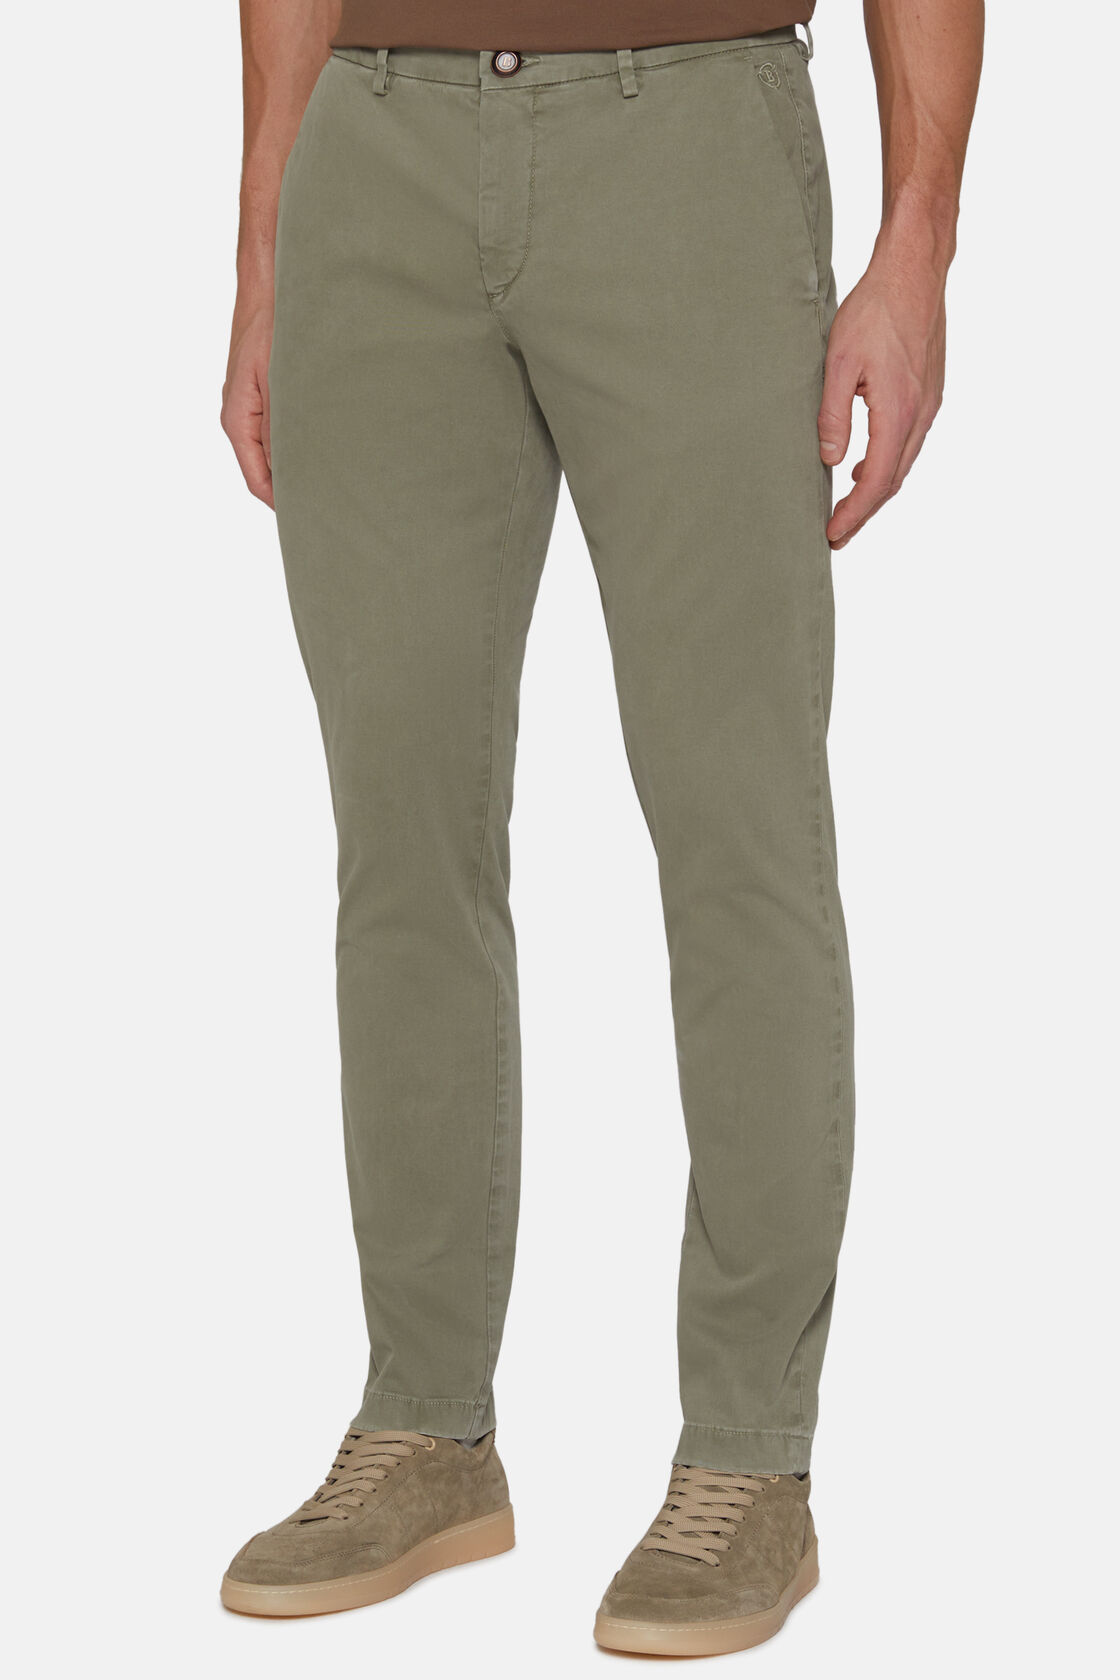 Ελαστικό βαμβακερό παντελόνι, Military Green, hi-res